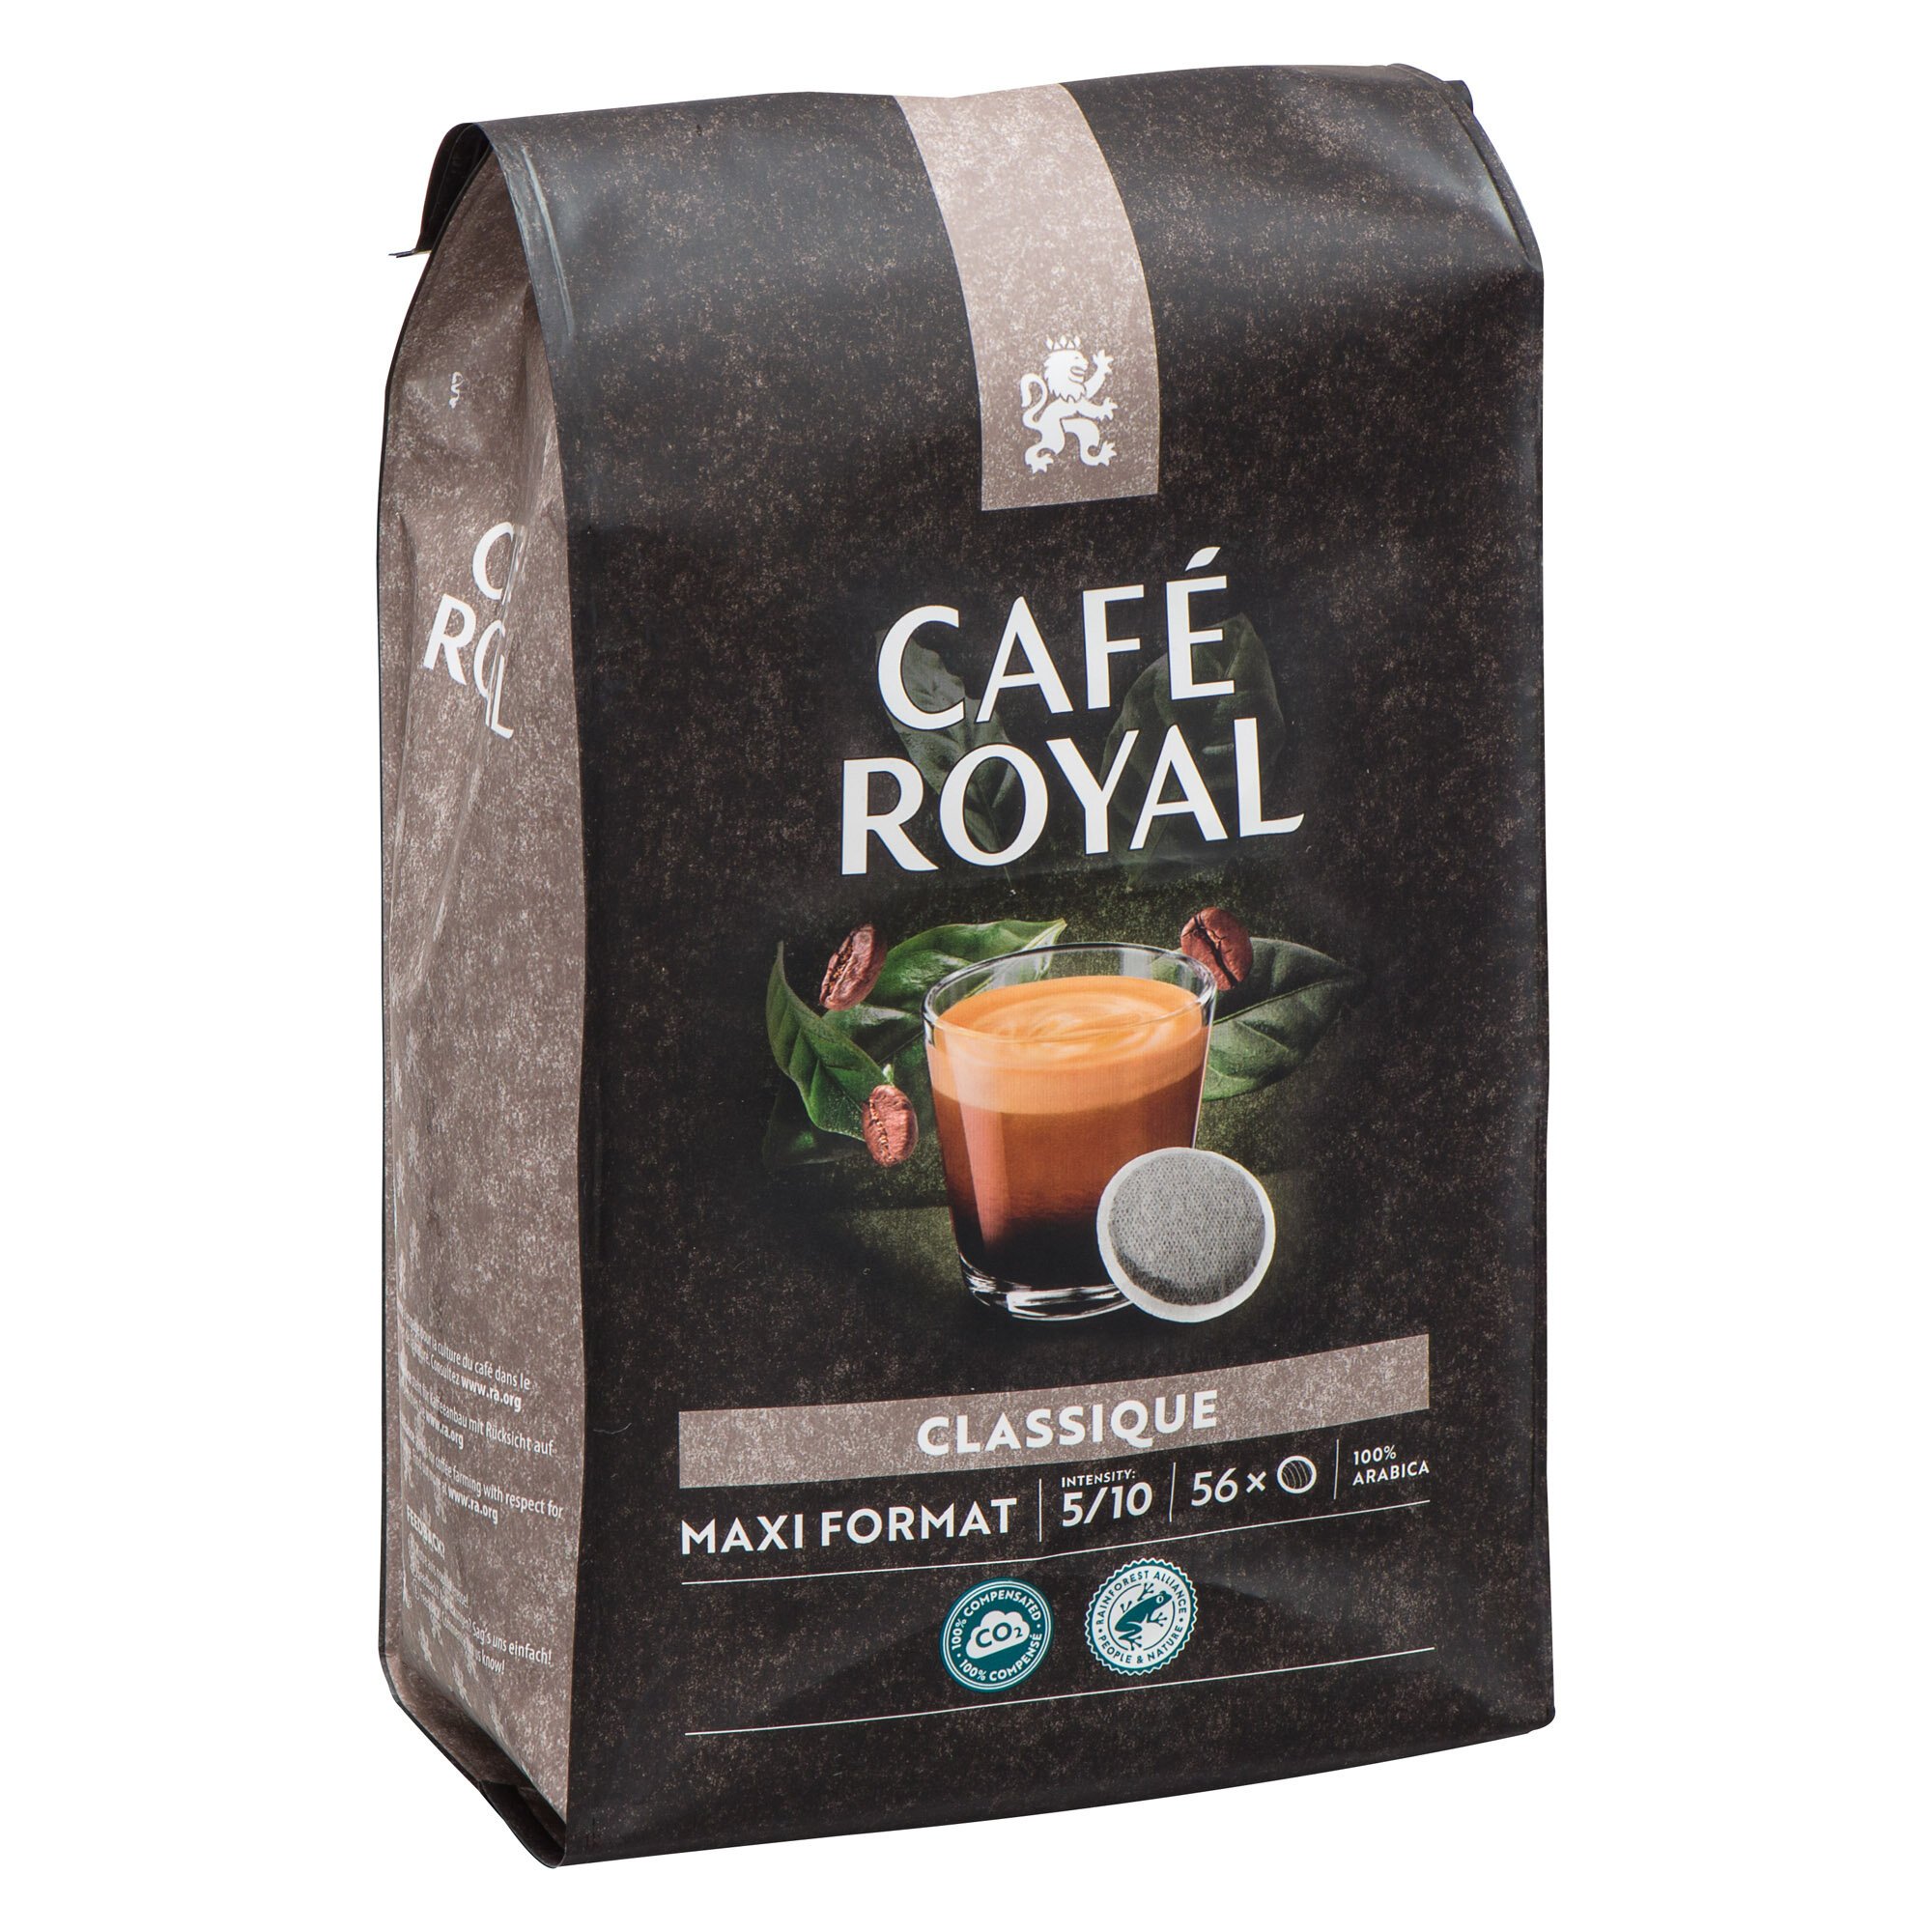 Café Royal lance du café en dose sans emballage